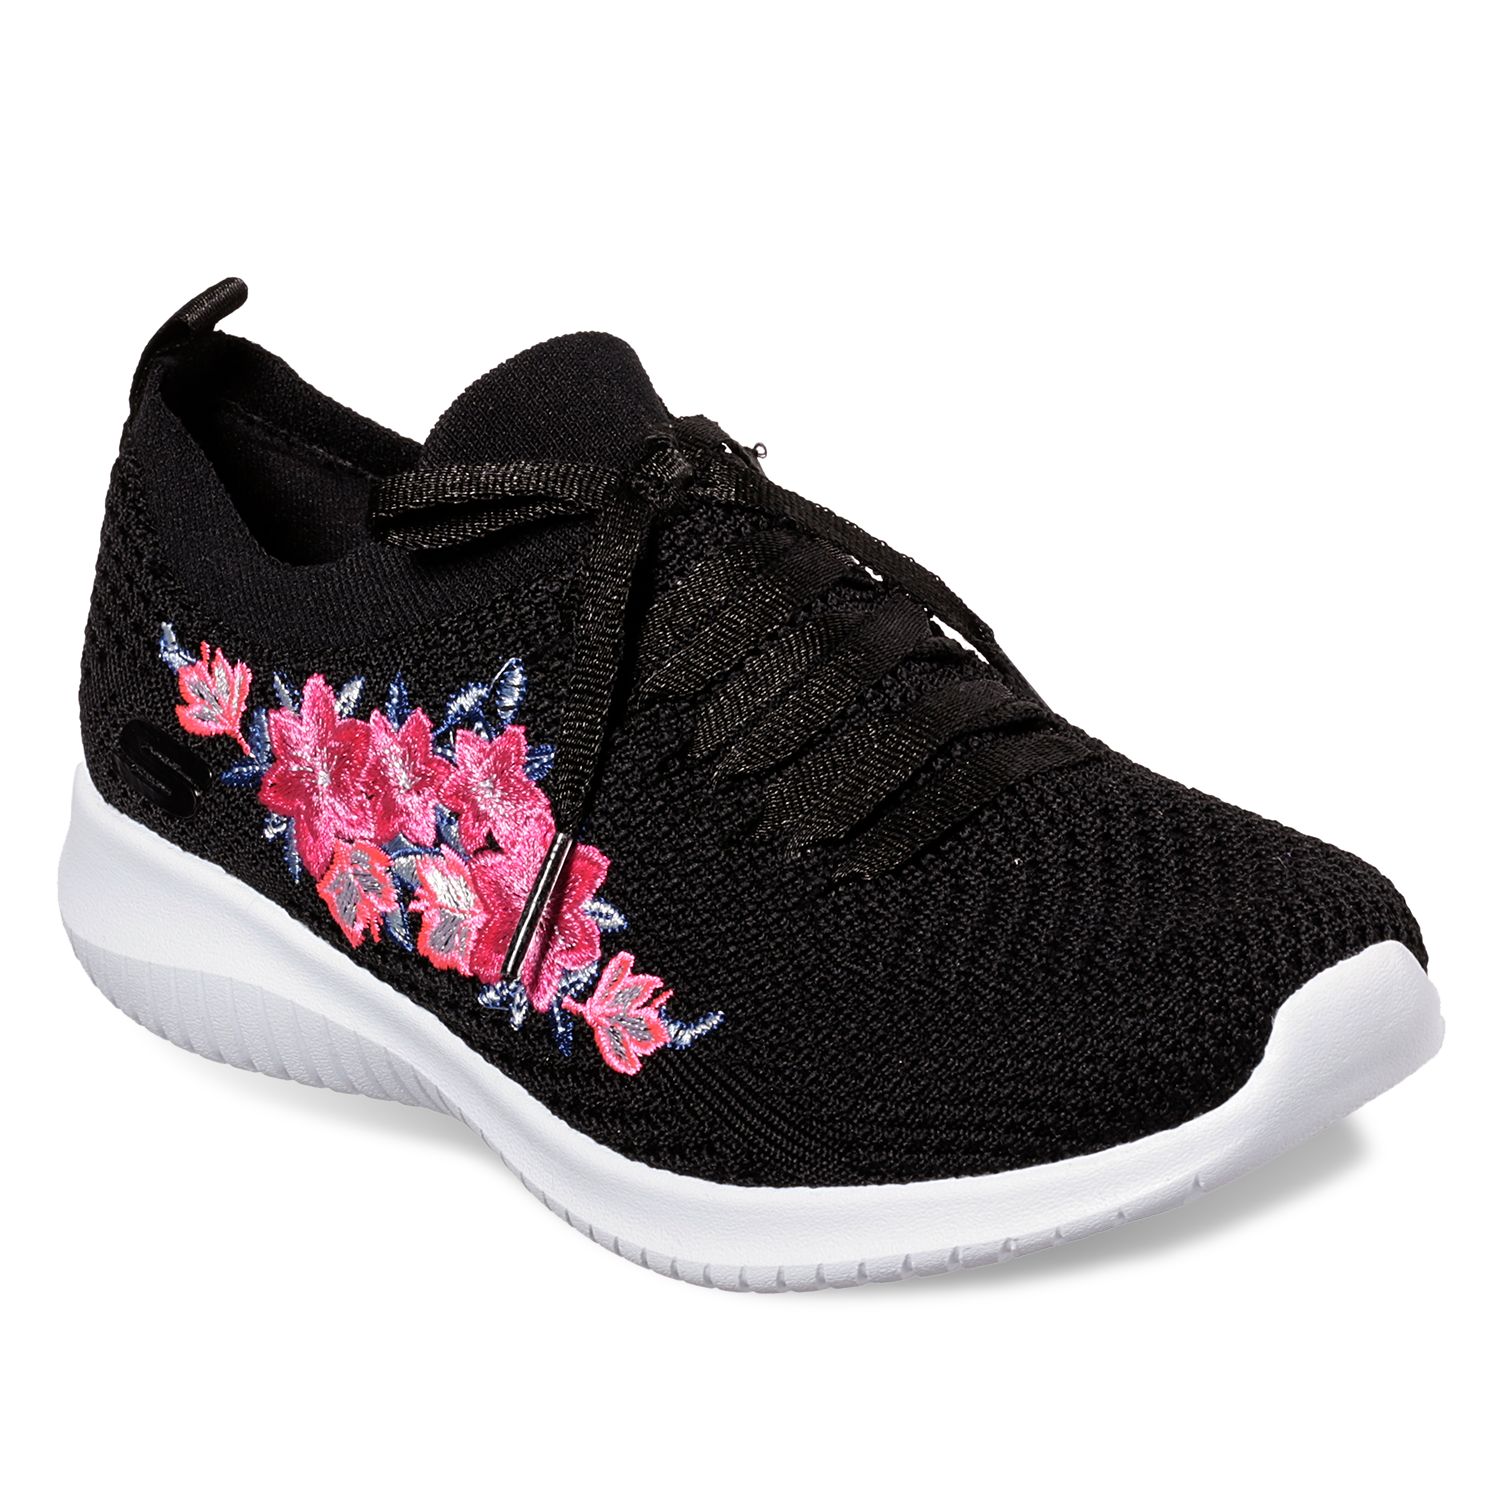 skechers women's floral print sneaker